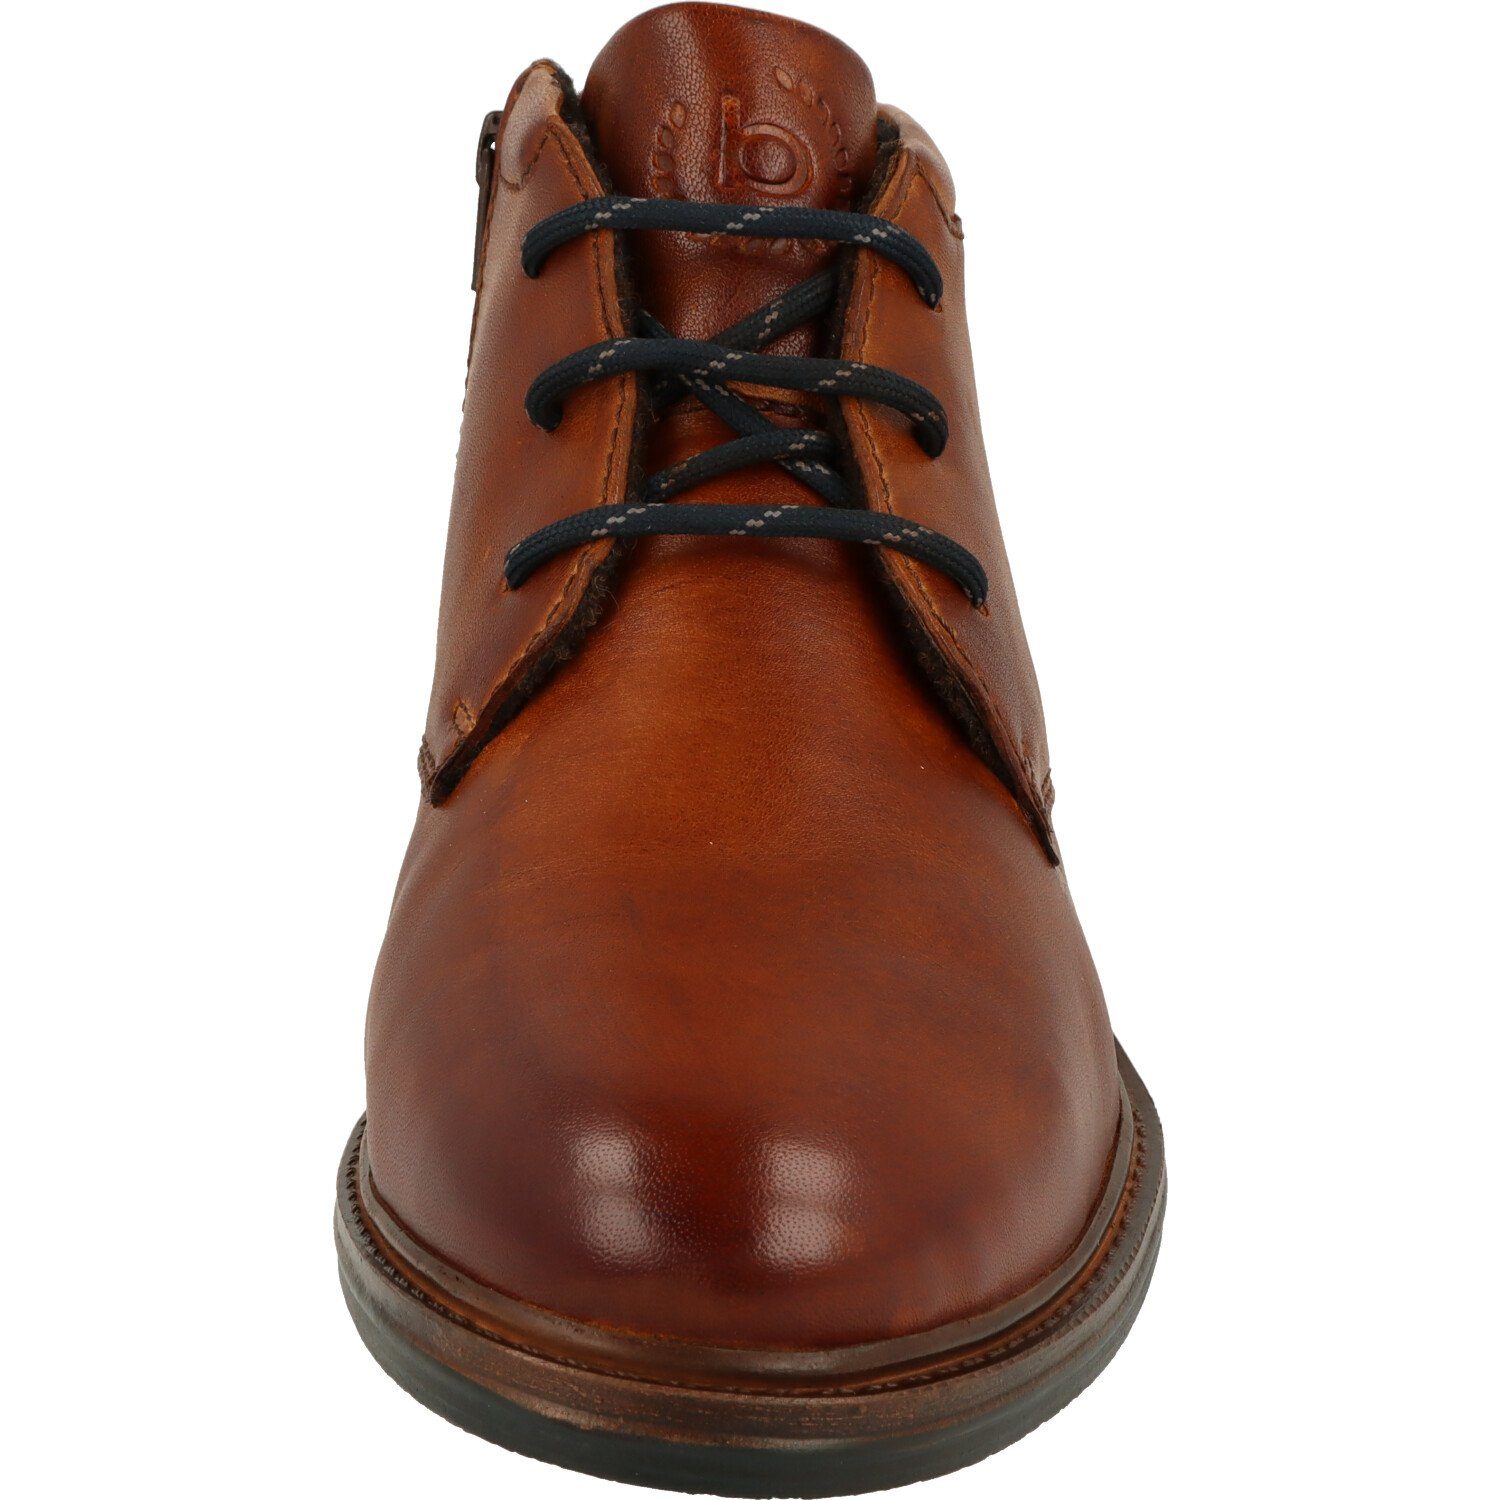 bugatti Ruggiero 311-A8Z33-4100 Herren Schuhe seitlicher Reißverschluss Schnürstiefel echt Leder, Cognac Boots Leder Stiefel